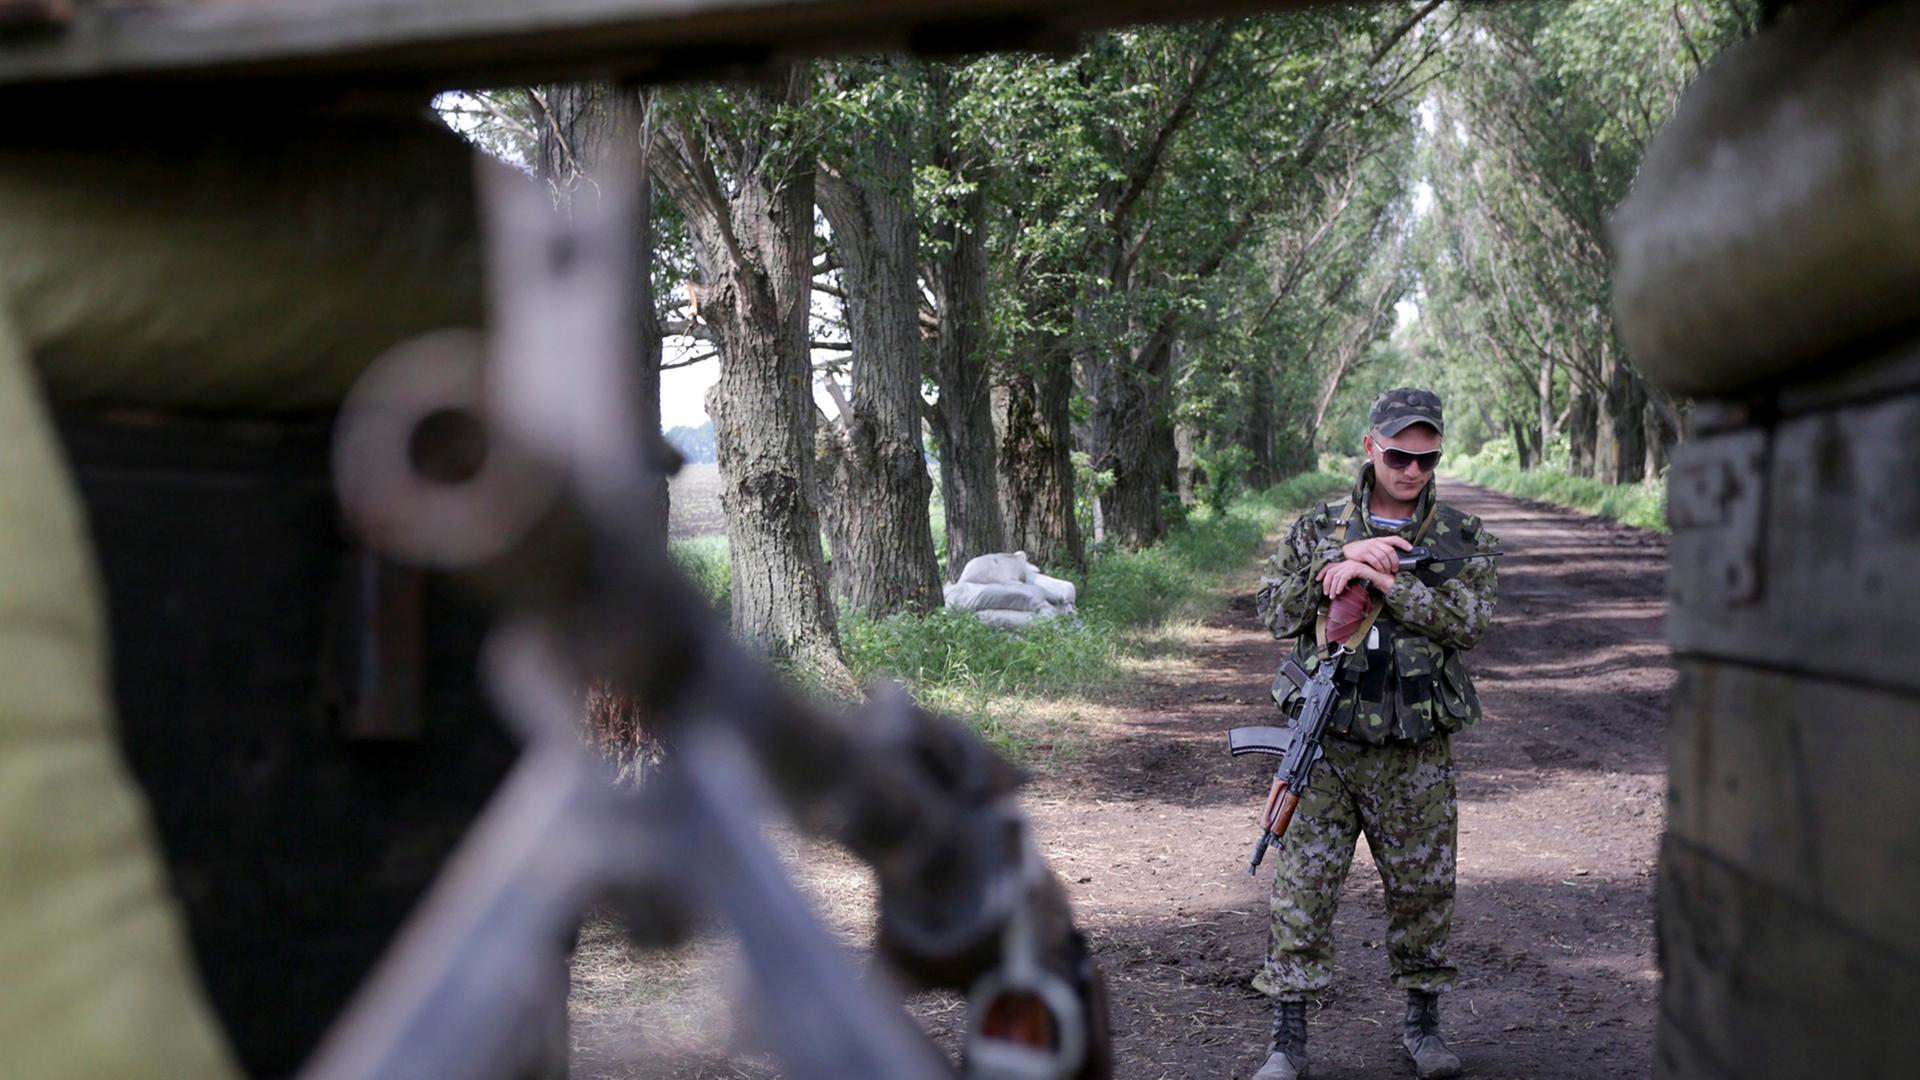 Ukrainischen Soldaten zielt mit einem Gewehr auf eine im Vordergrund ebenfalls mit einem Gewehr bewaffneten Person. Im Hintergrund ist eine Allee zu sehen.